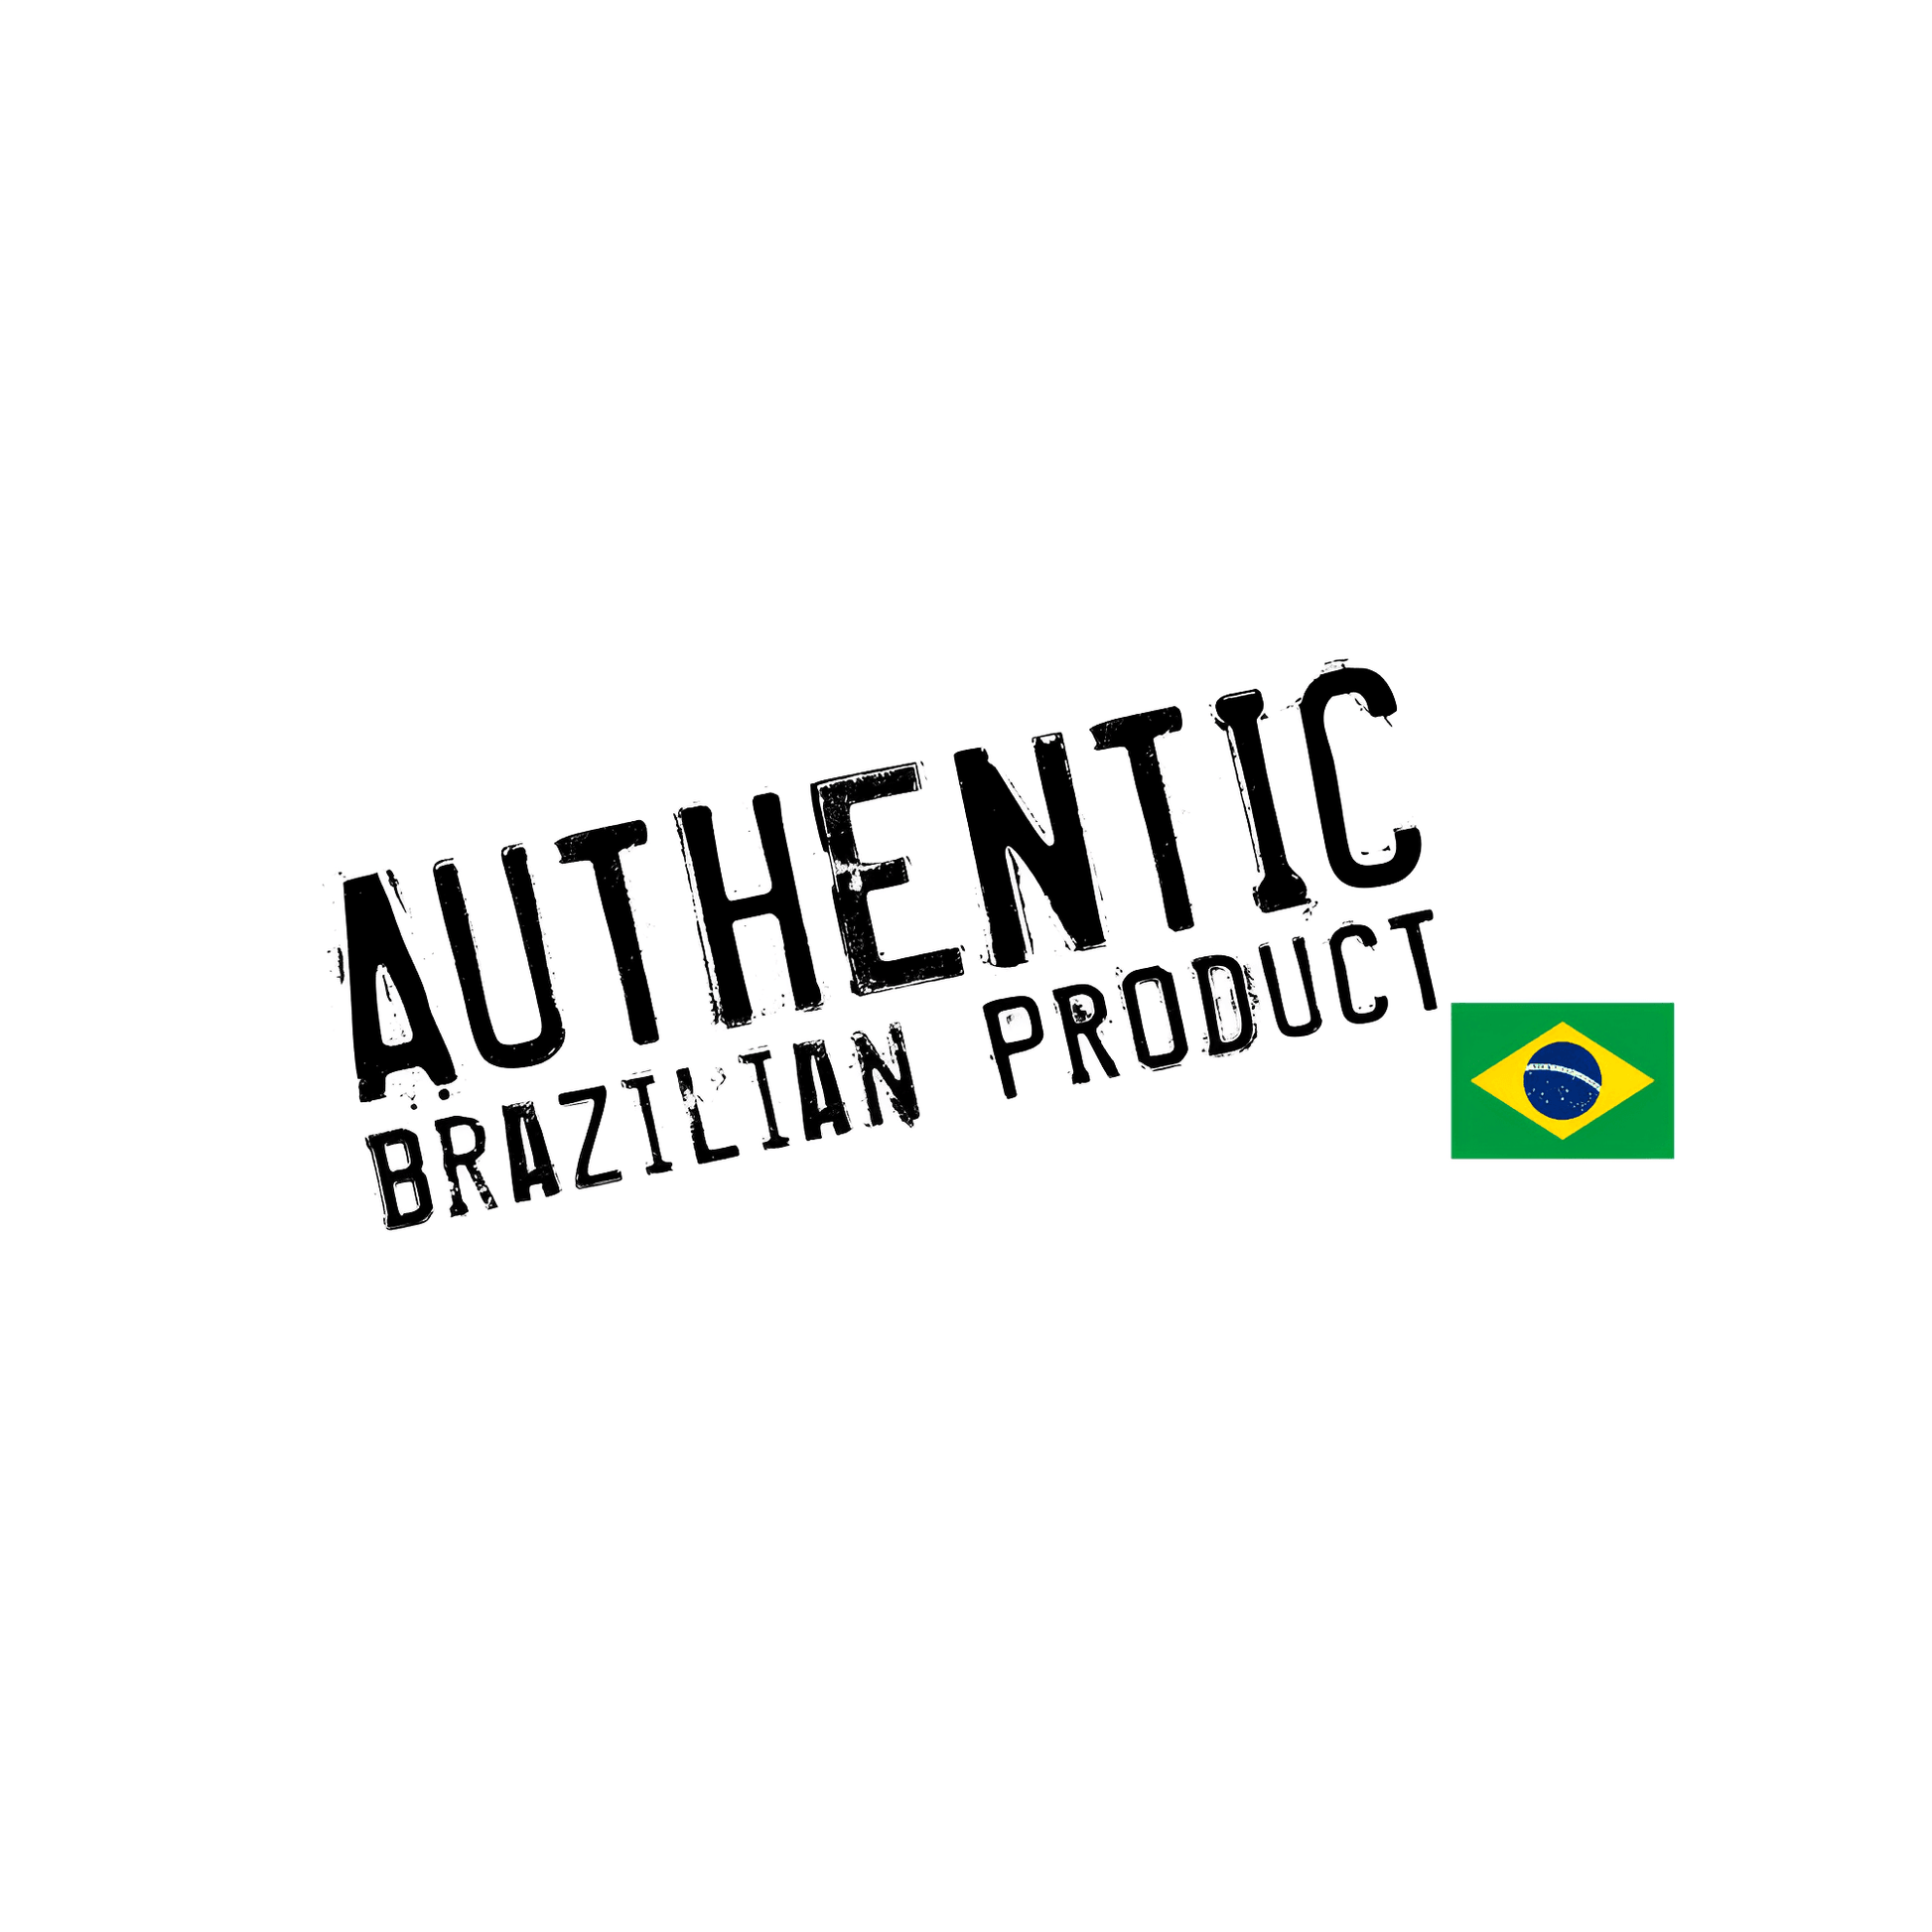 Canga Brazilian Beach Towel Rio de Janeiro Brazil Flag - Brazilian Shop